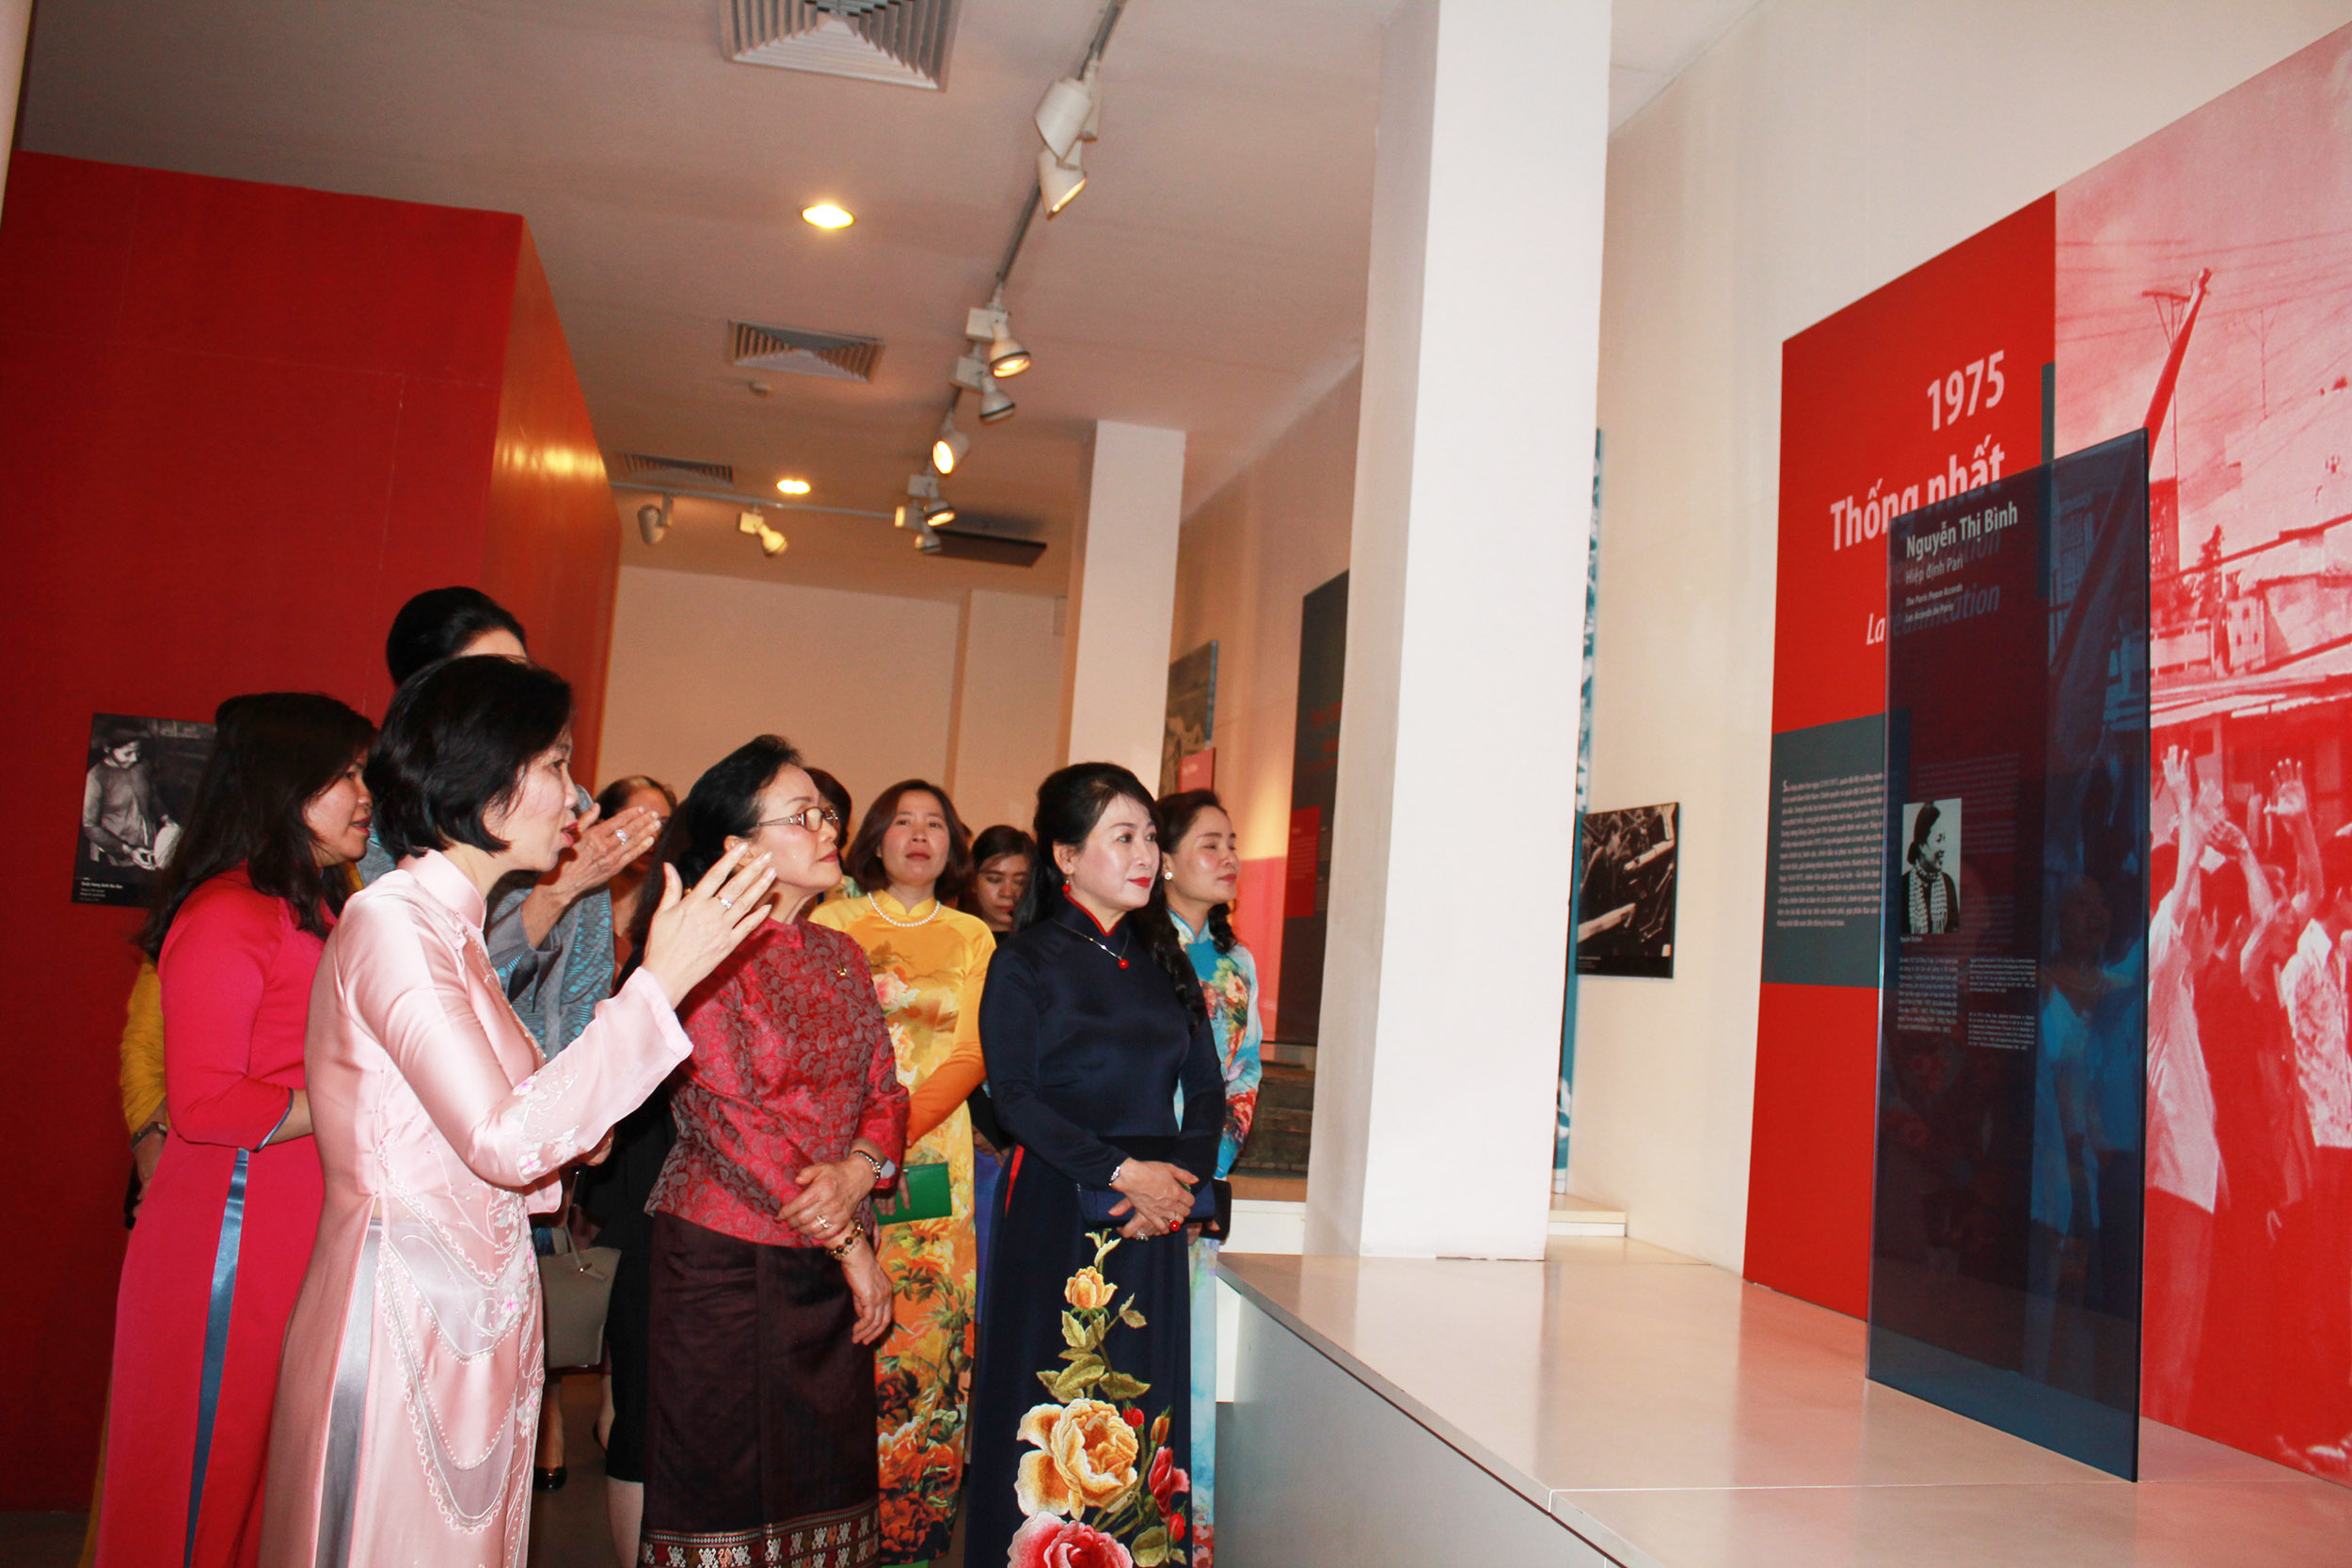 Các phu nhân chăm chú ngắm nhìn bức ảnh của nguyên Phó Chủ tịch nước Nguyễn Thị Bình và đọc những dòng chữ viết về những đóng góp của bà trong lịch sử Việt Nam.